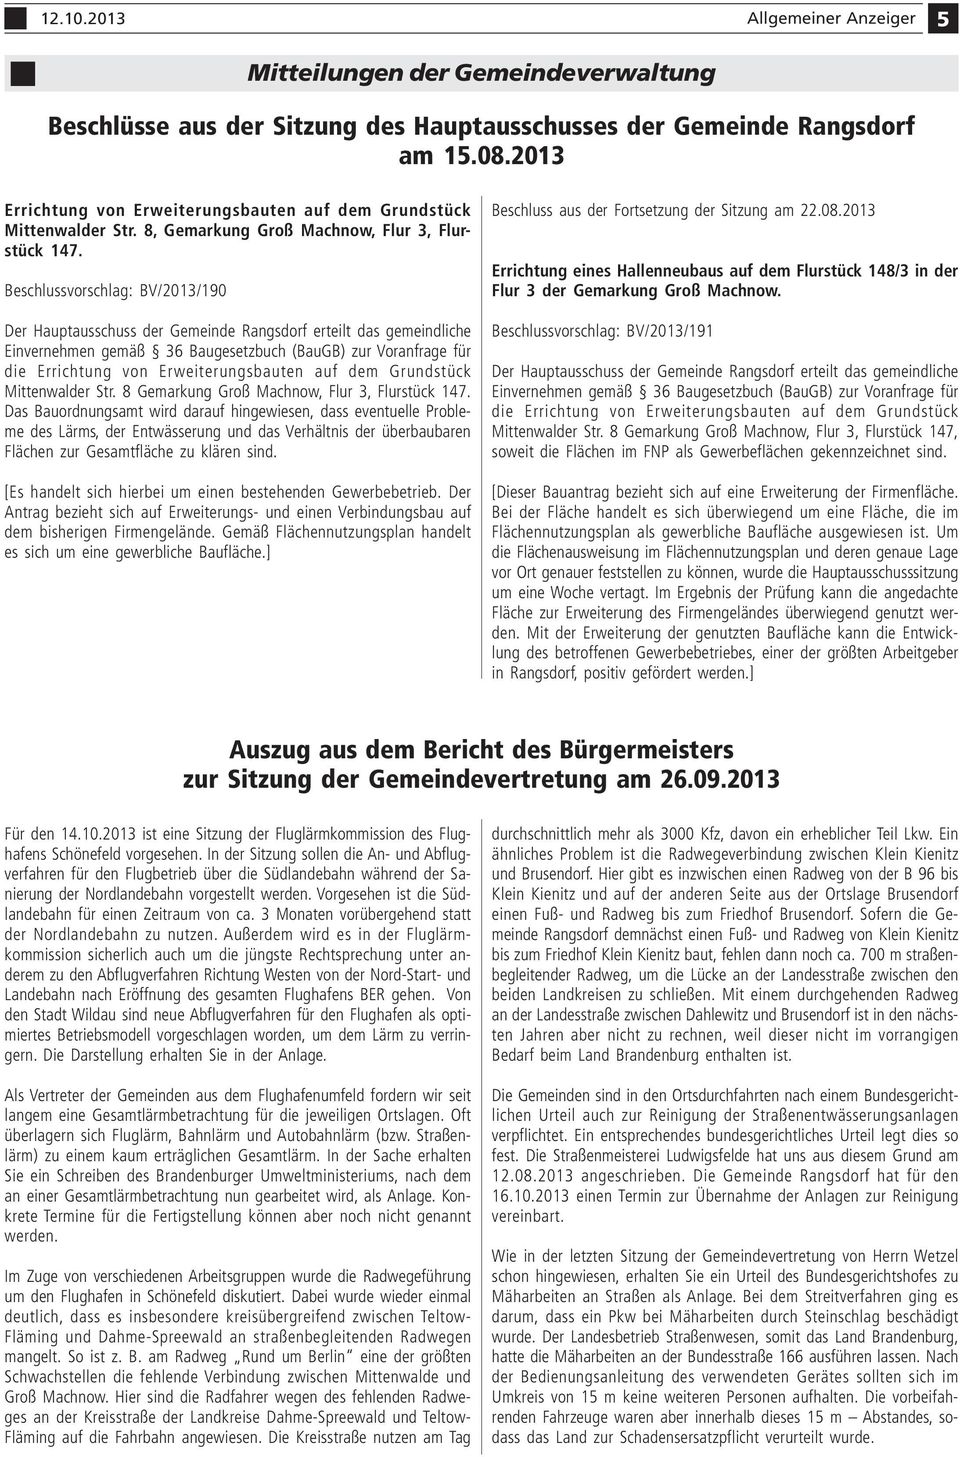 Beschlussvorschlag: BV/2013/190 Der Hauptausschuss der Gemeinde Rangsdorf erteilt das gemeindliche Einvernehmen gemäß 36 Baugesetzbuch (BauGB) zur Voranfrage für die Errichtung von Erweiterungsbauten